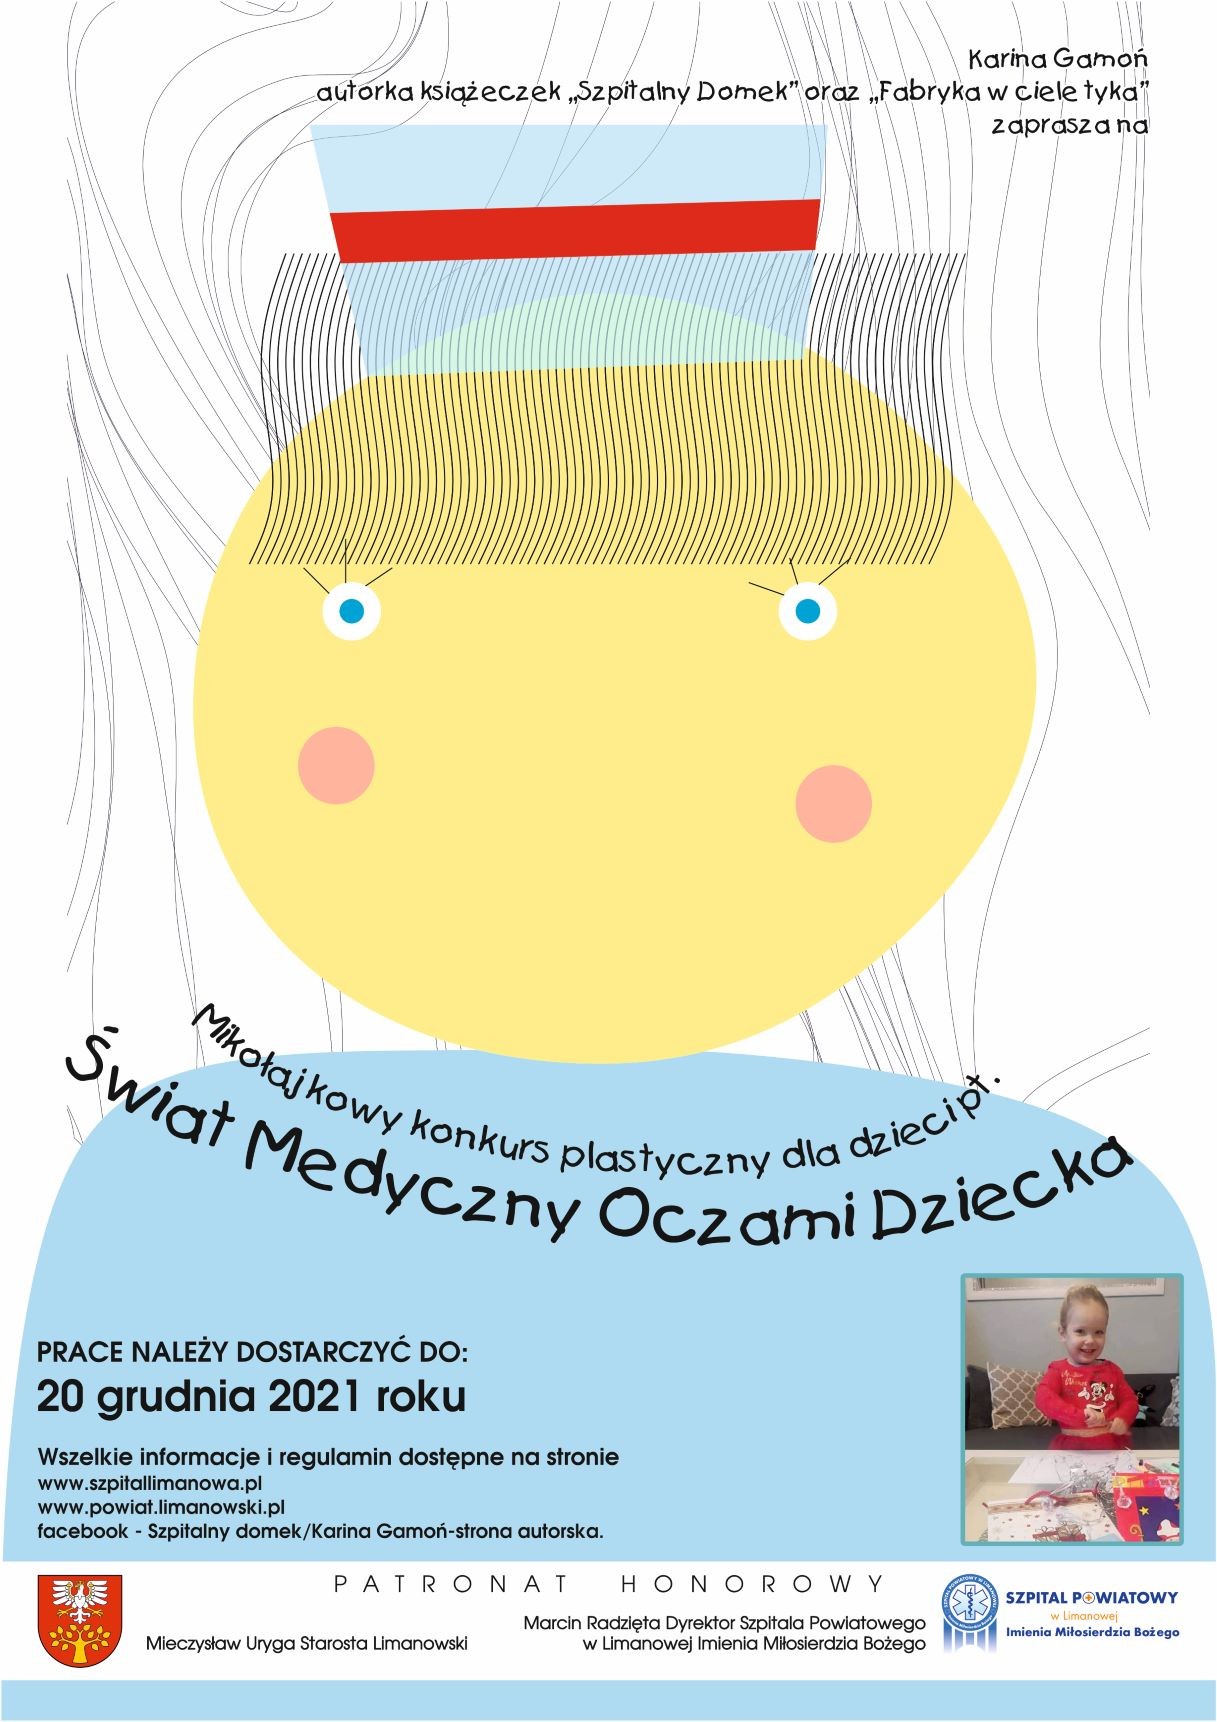 Konkurs plastyczny "Świat Medyczny Oczami Dziecka" - plakat informacyjny